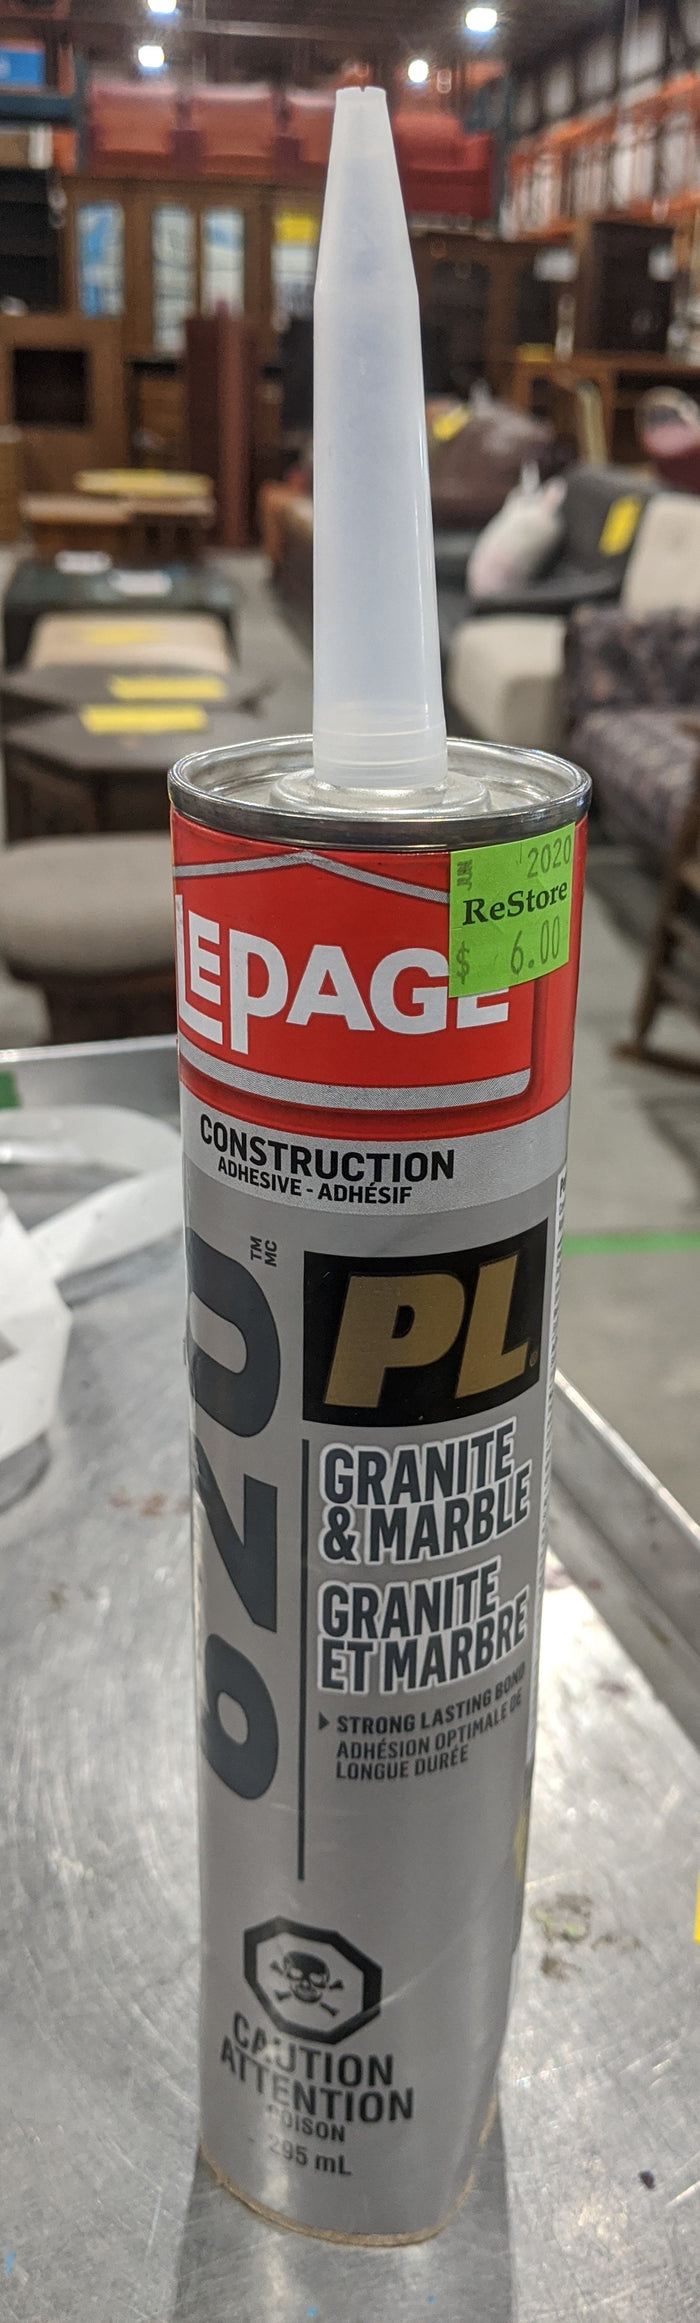 PL 620 Granite & Marble Adhesive